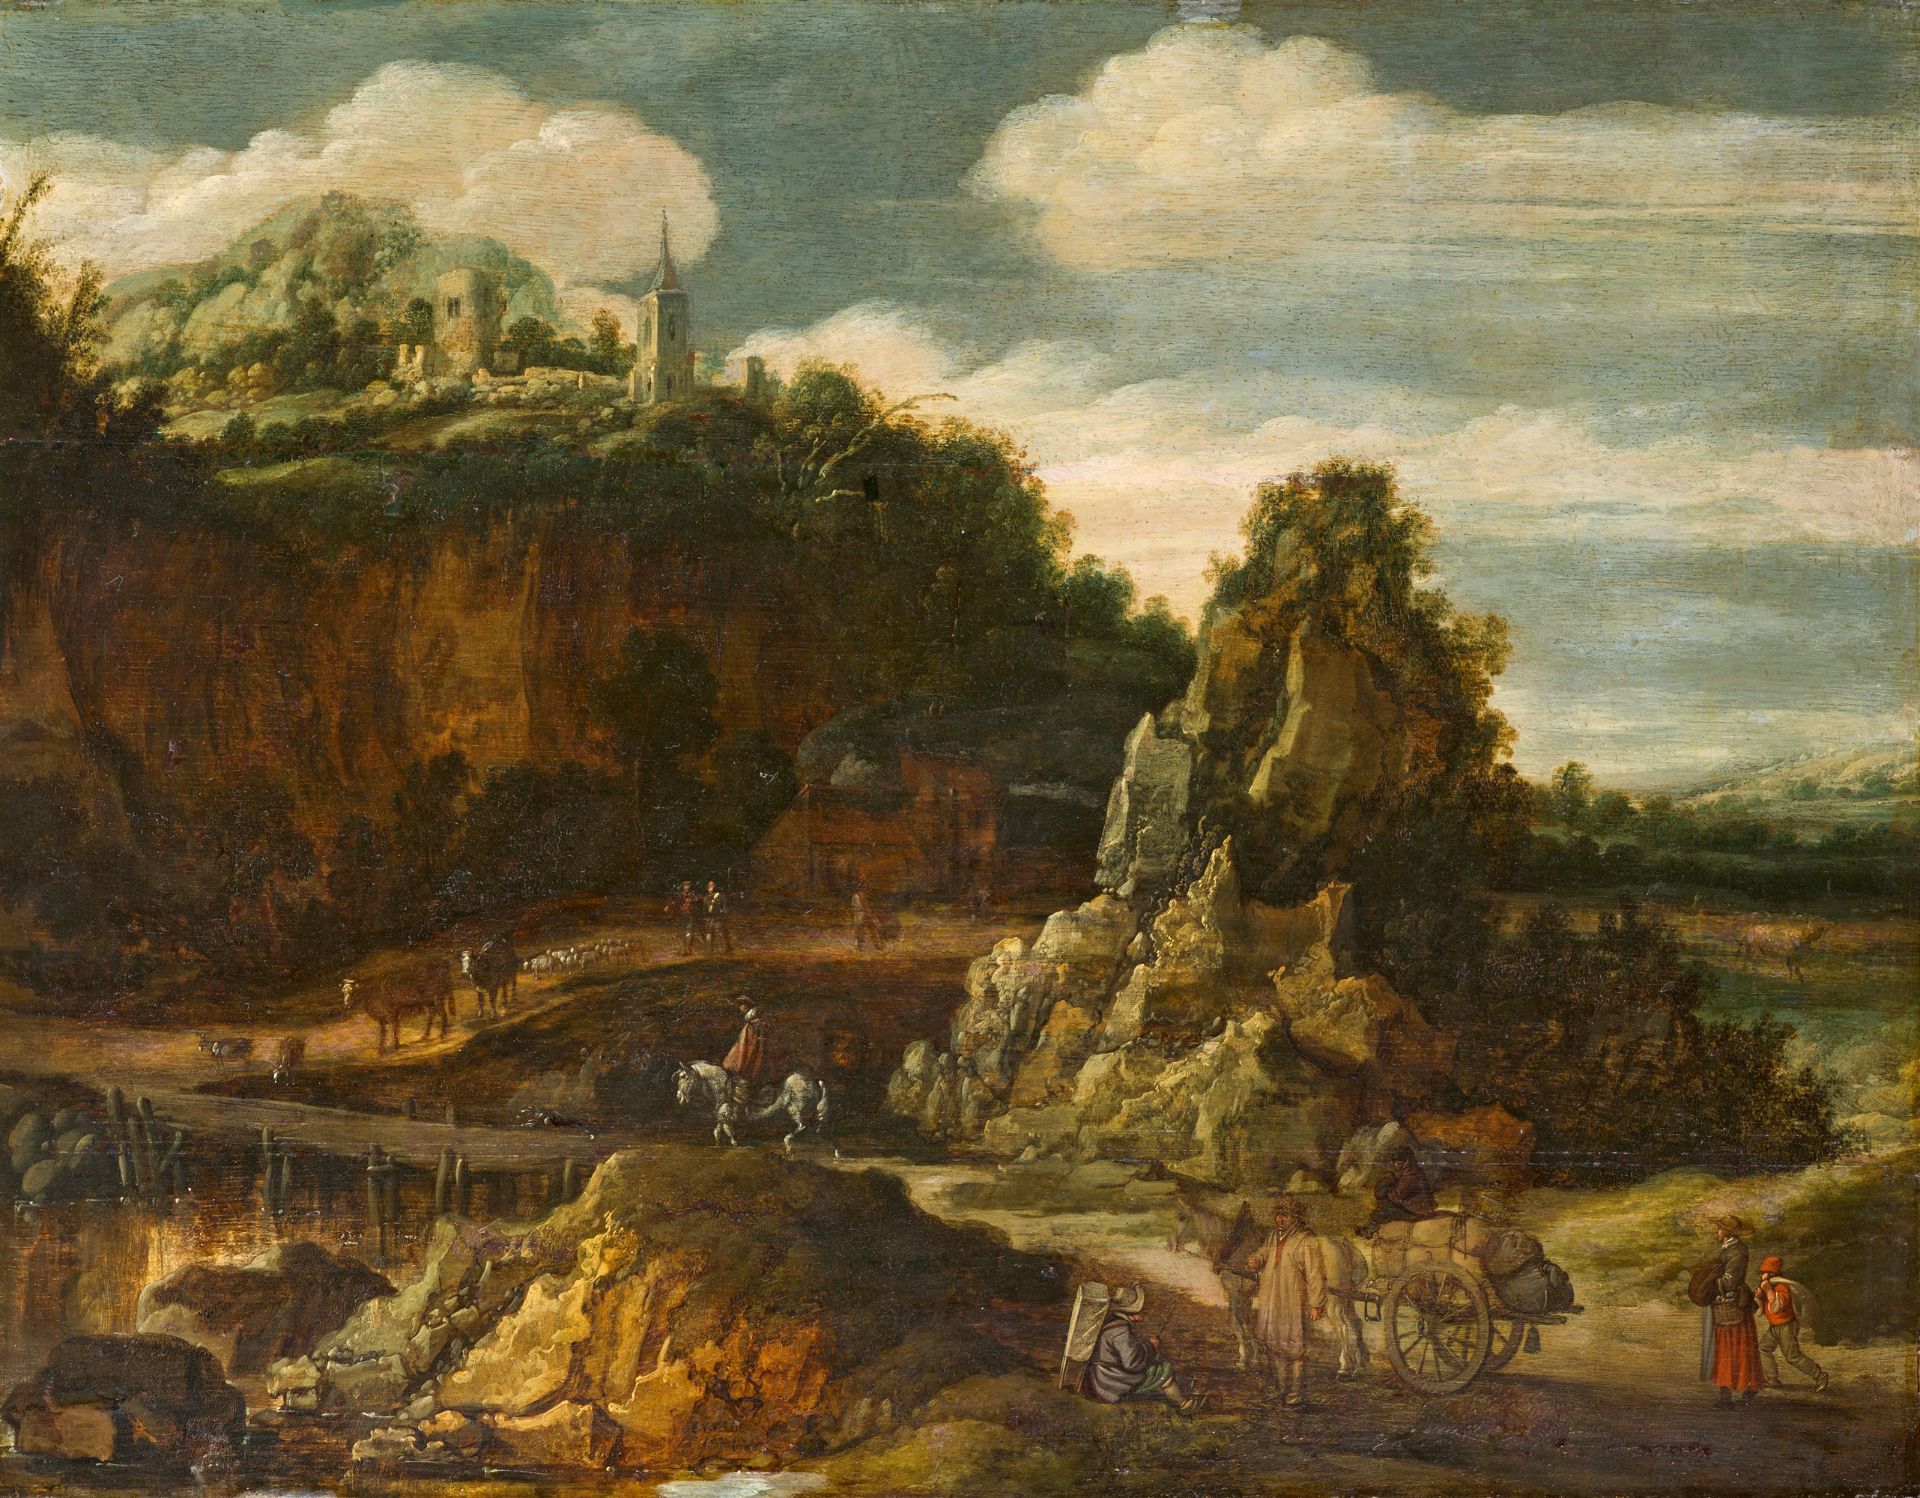 Esaias van de Velde, Path across a Stream in a Hilly Landscape